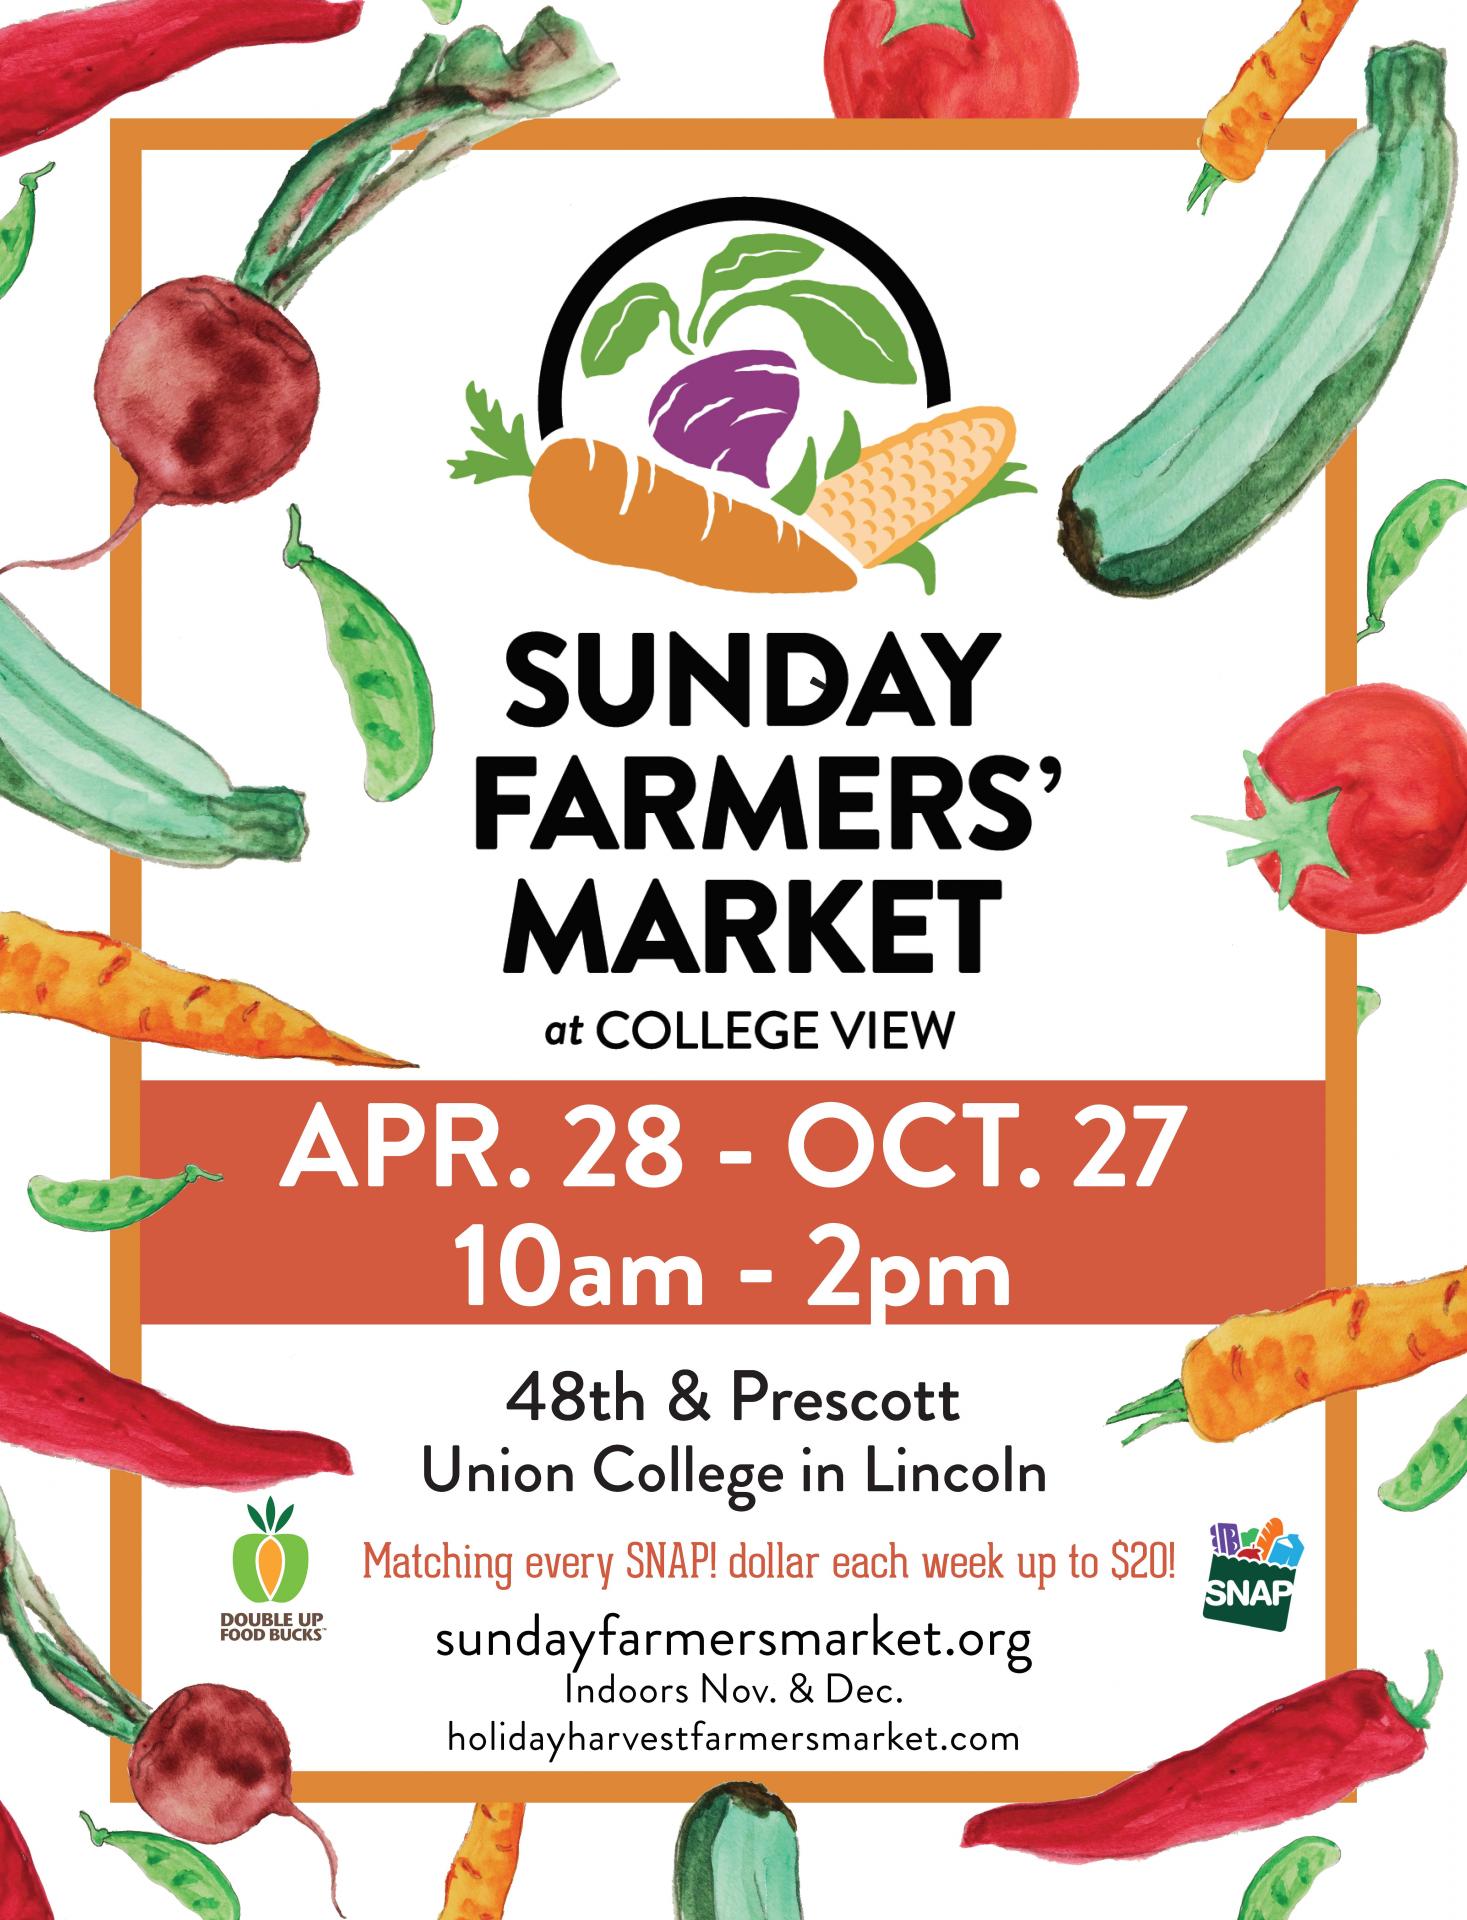 Sunday Farmers Market ad